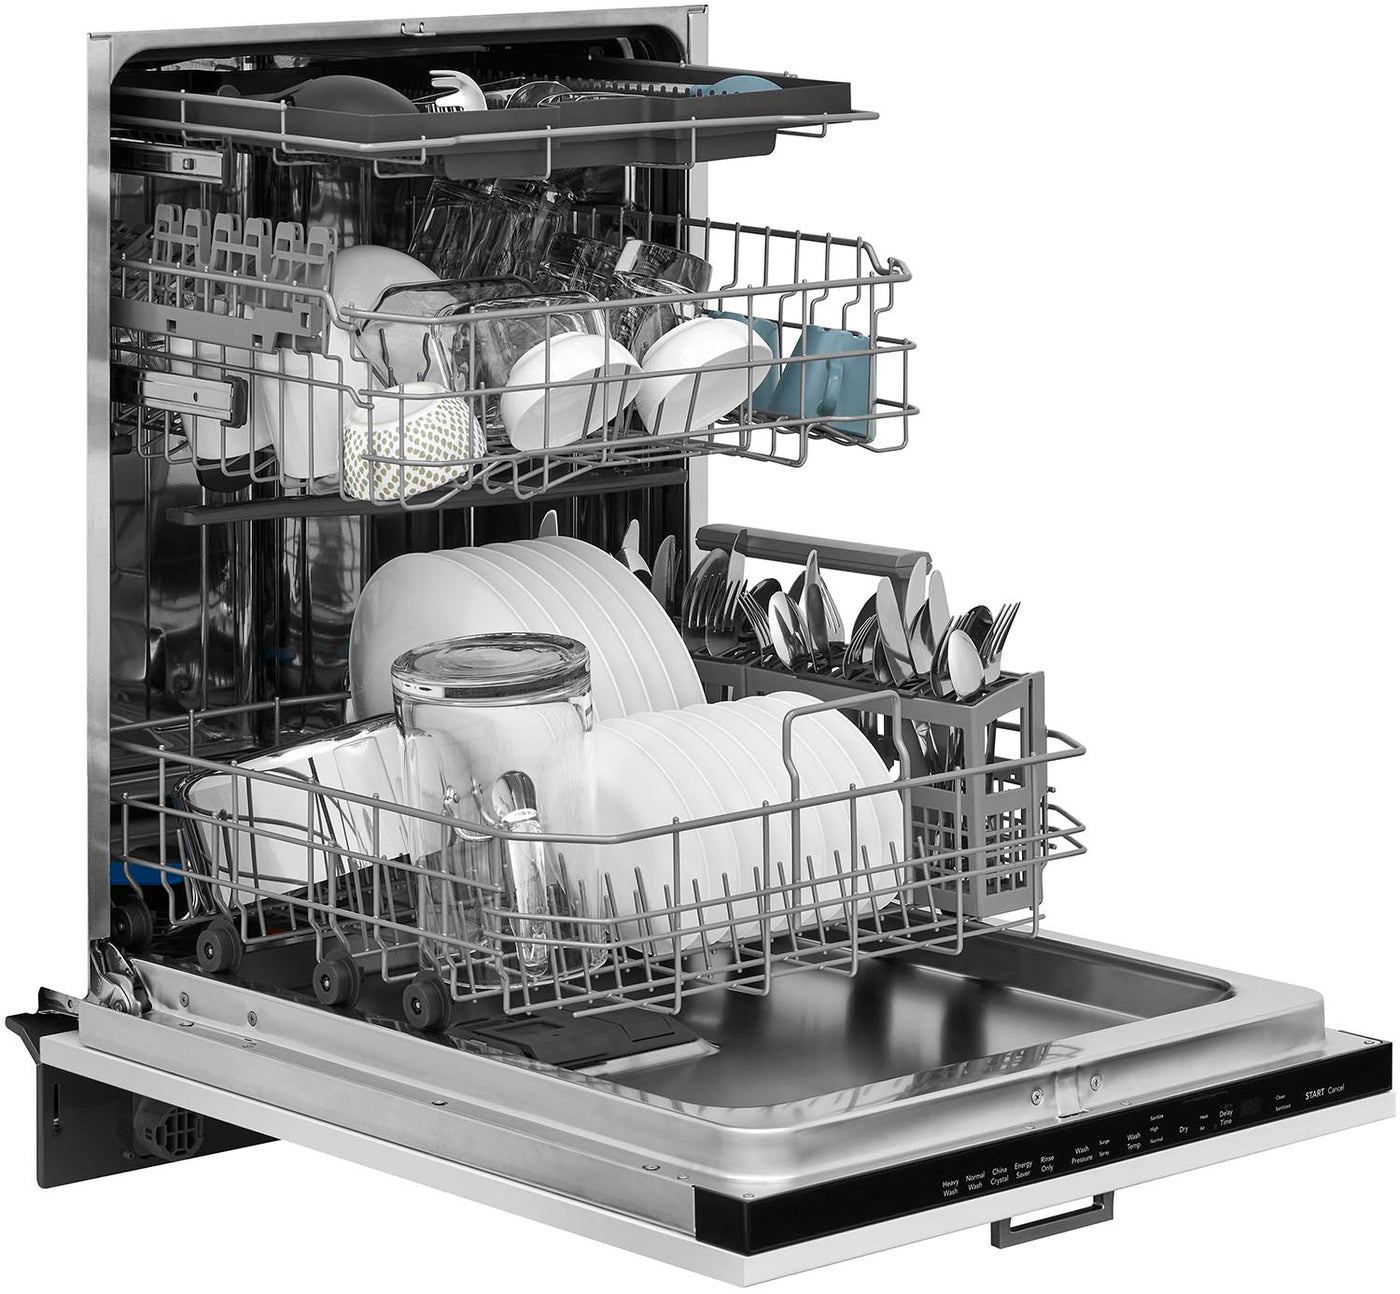 Frigidaire Panel-Ready 24" Dishwasher - FDSR4501AP